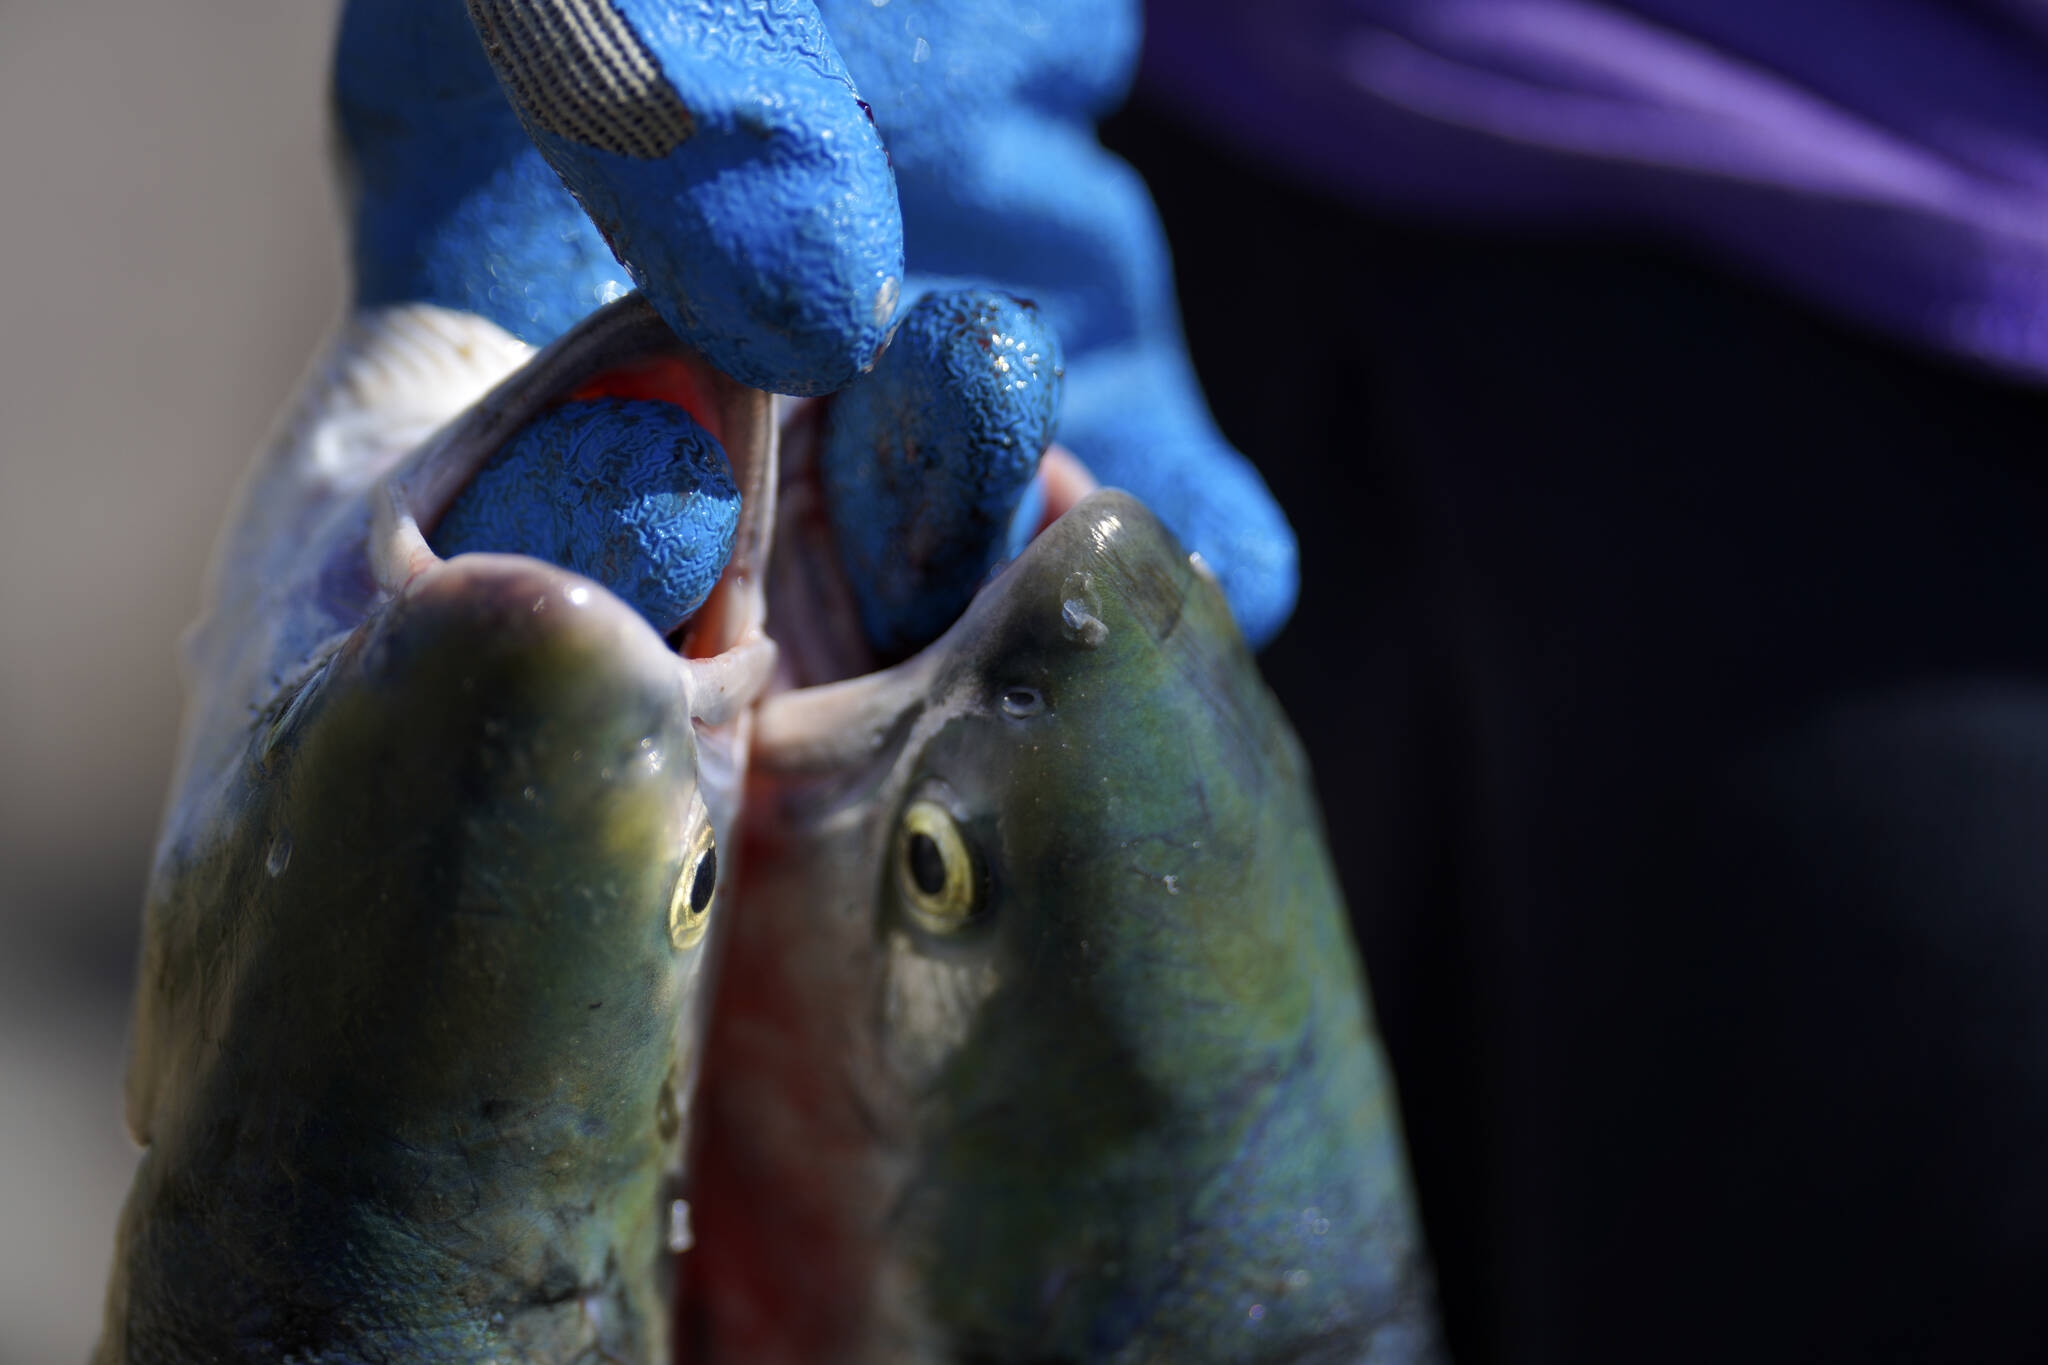 A pair of freshly caught salmon. (AP Photo/Jessie Wardarski)